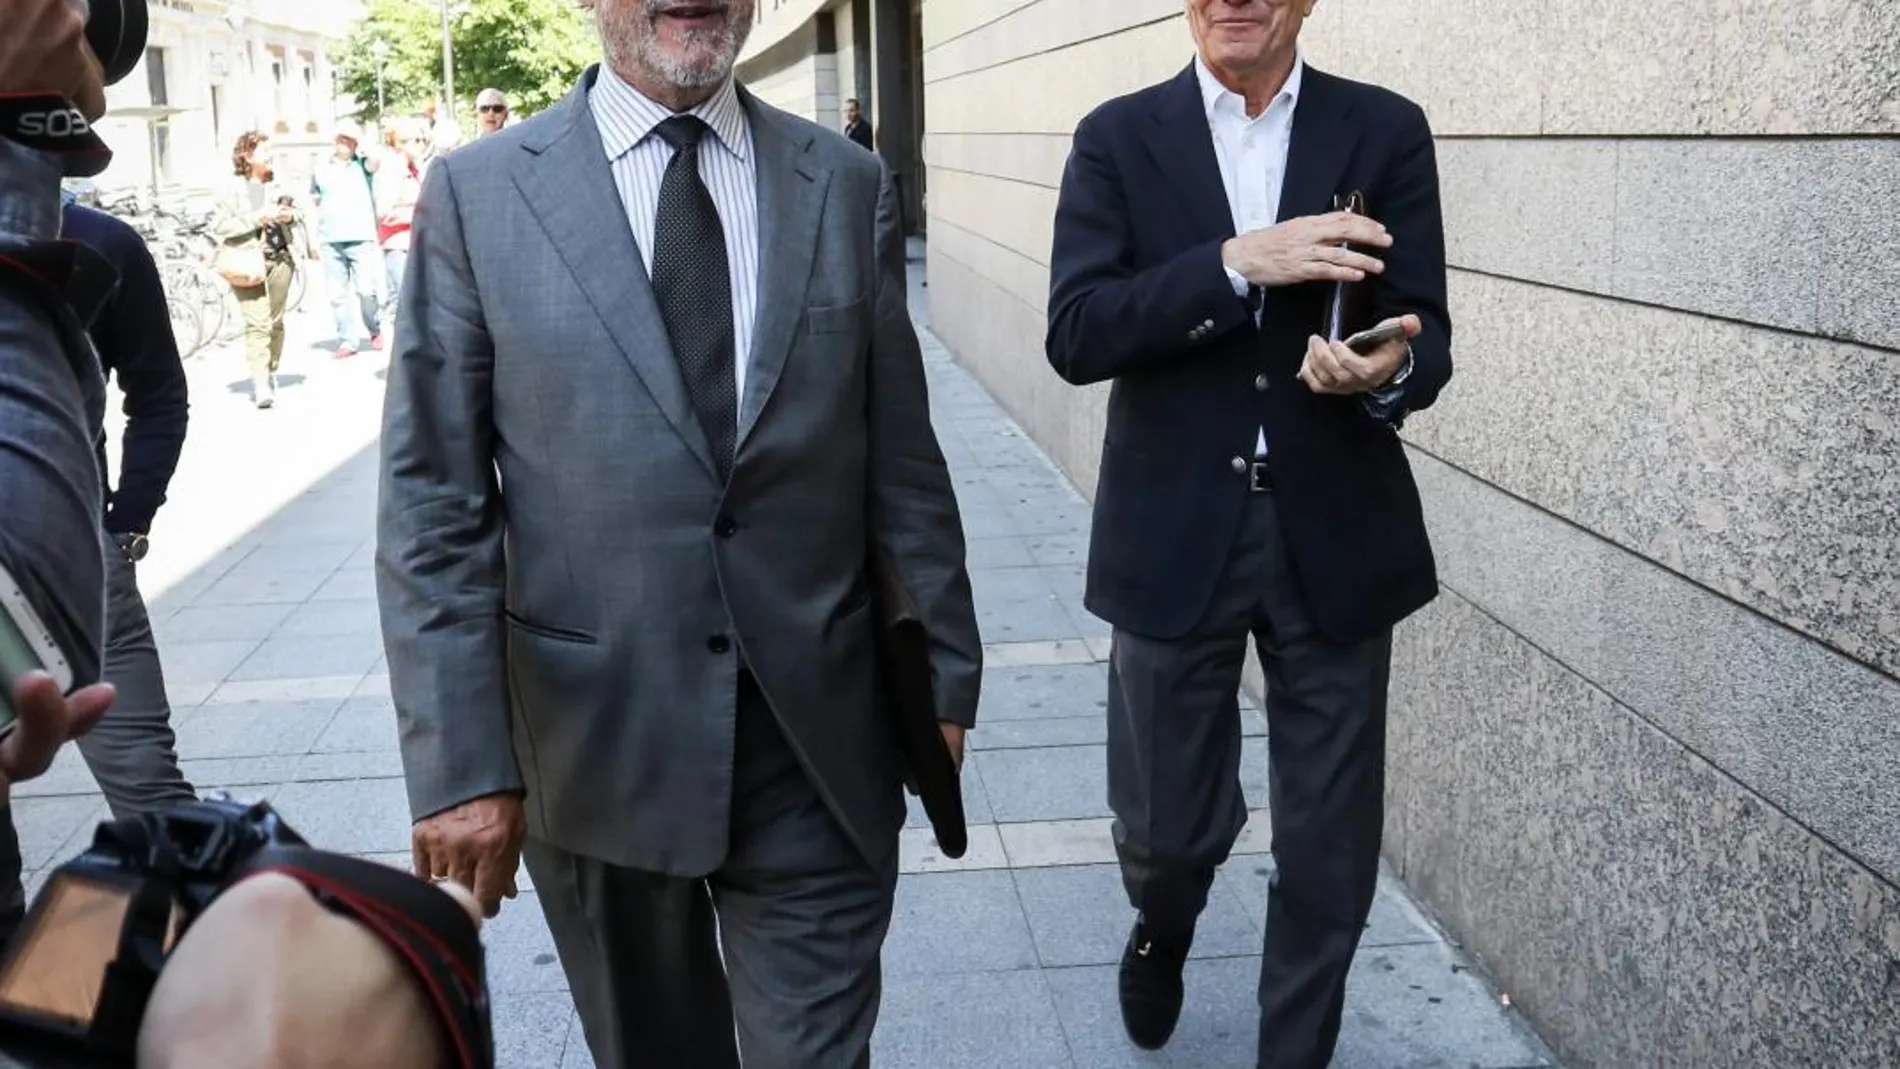 Javier León de la Riva y el exconcejal Manuel Sánchez, salen del juzgado tras declarar por el caso de las cartas de conformidad en mayo del pasado año